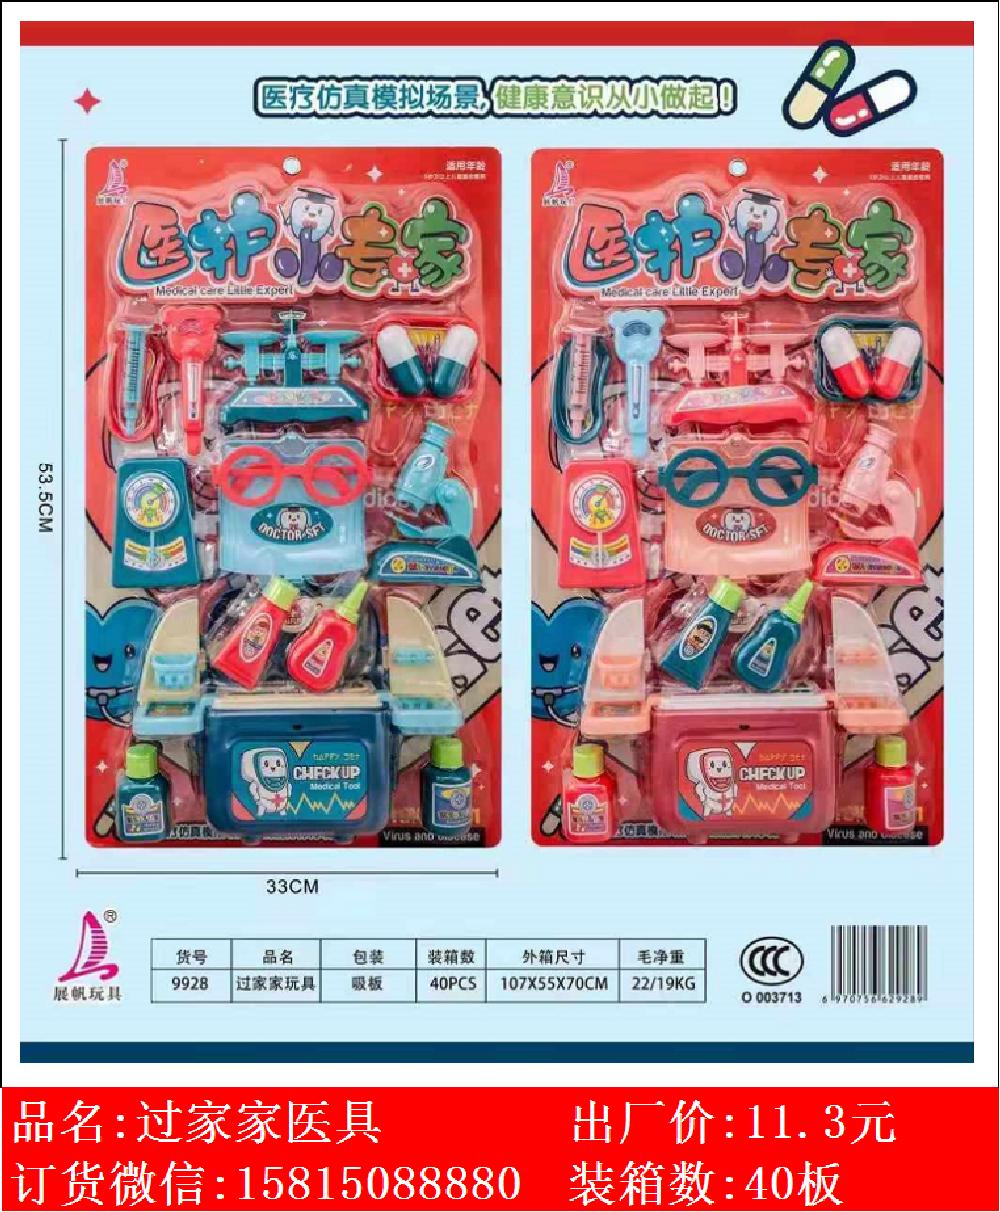 Xinle’er medical expert family medical toys